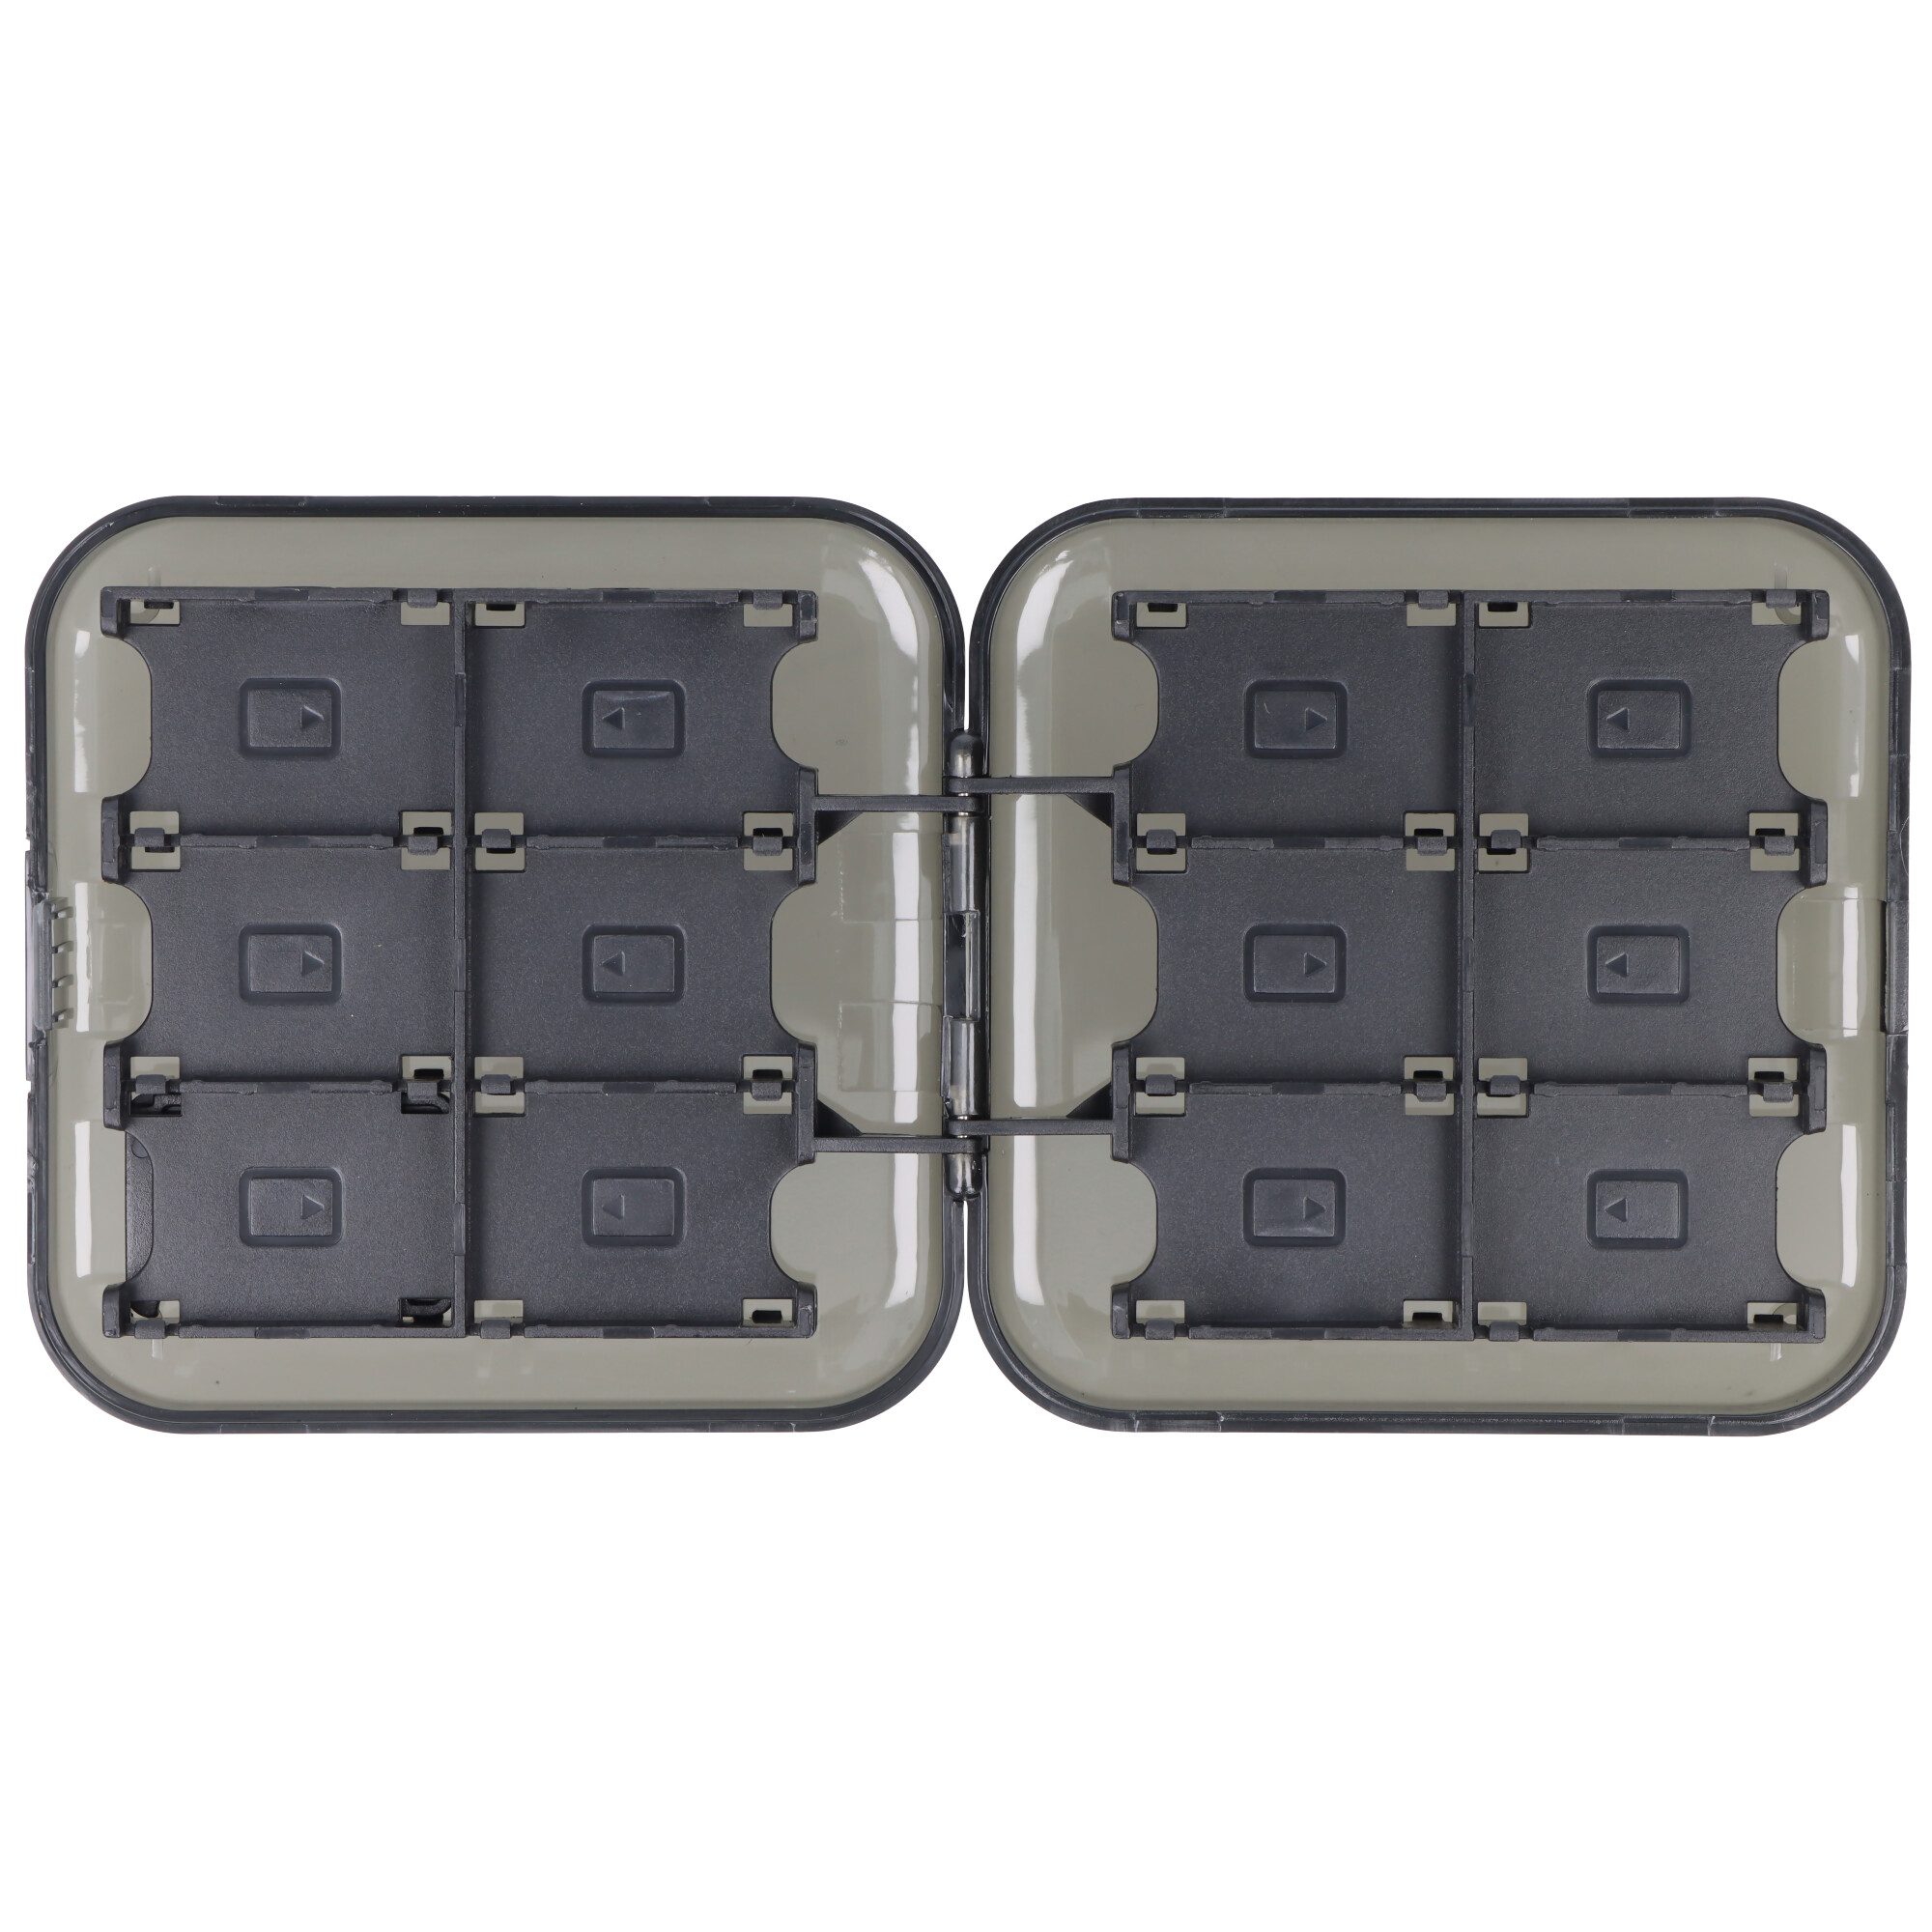 Aufbewahrungsbox ideal passend für Nintendo Switch Spiele, Schutzhülle, Transportbox für Nintendo Switch Spielmodule